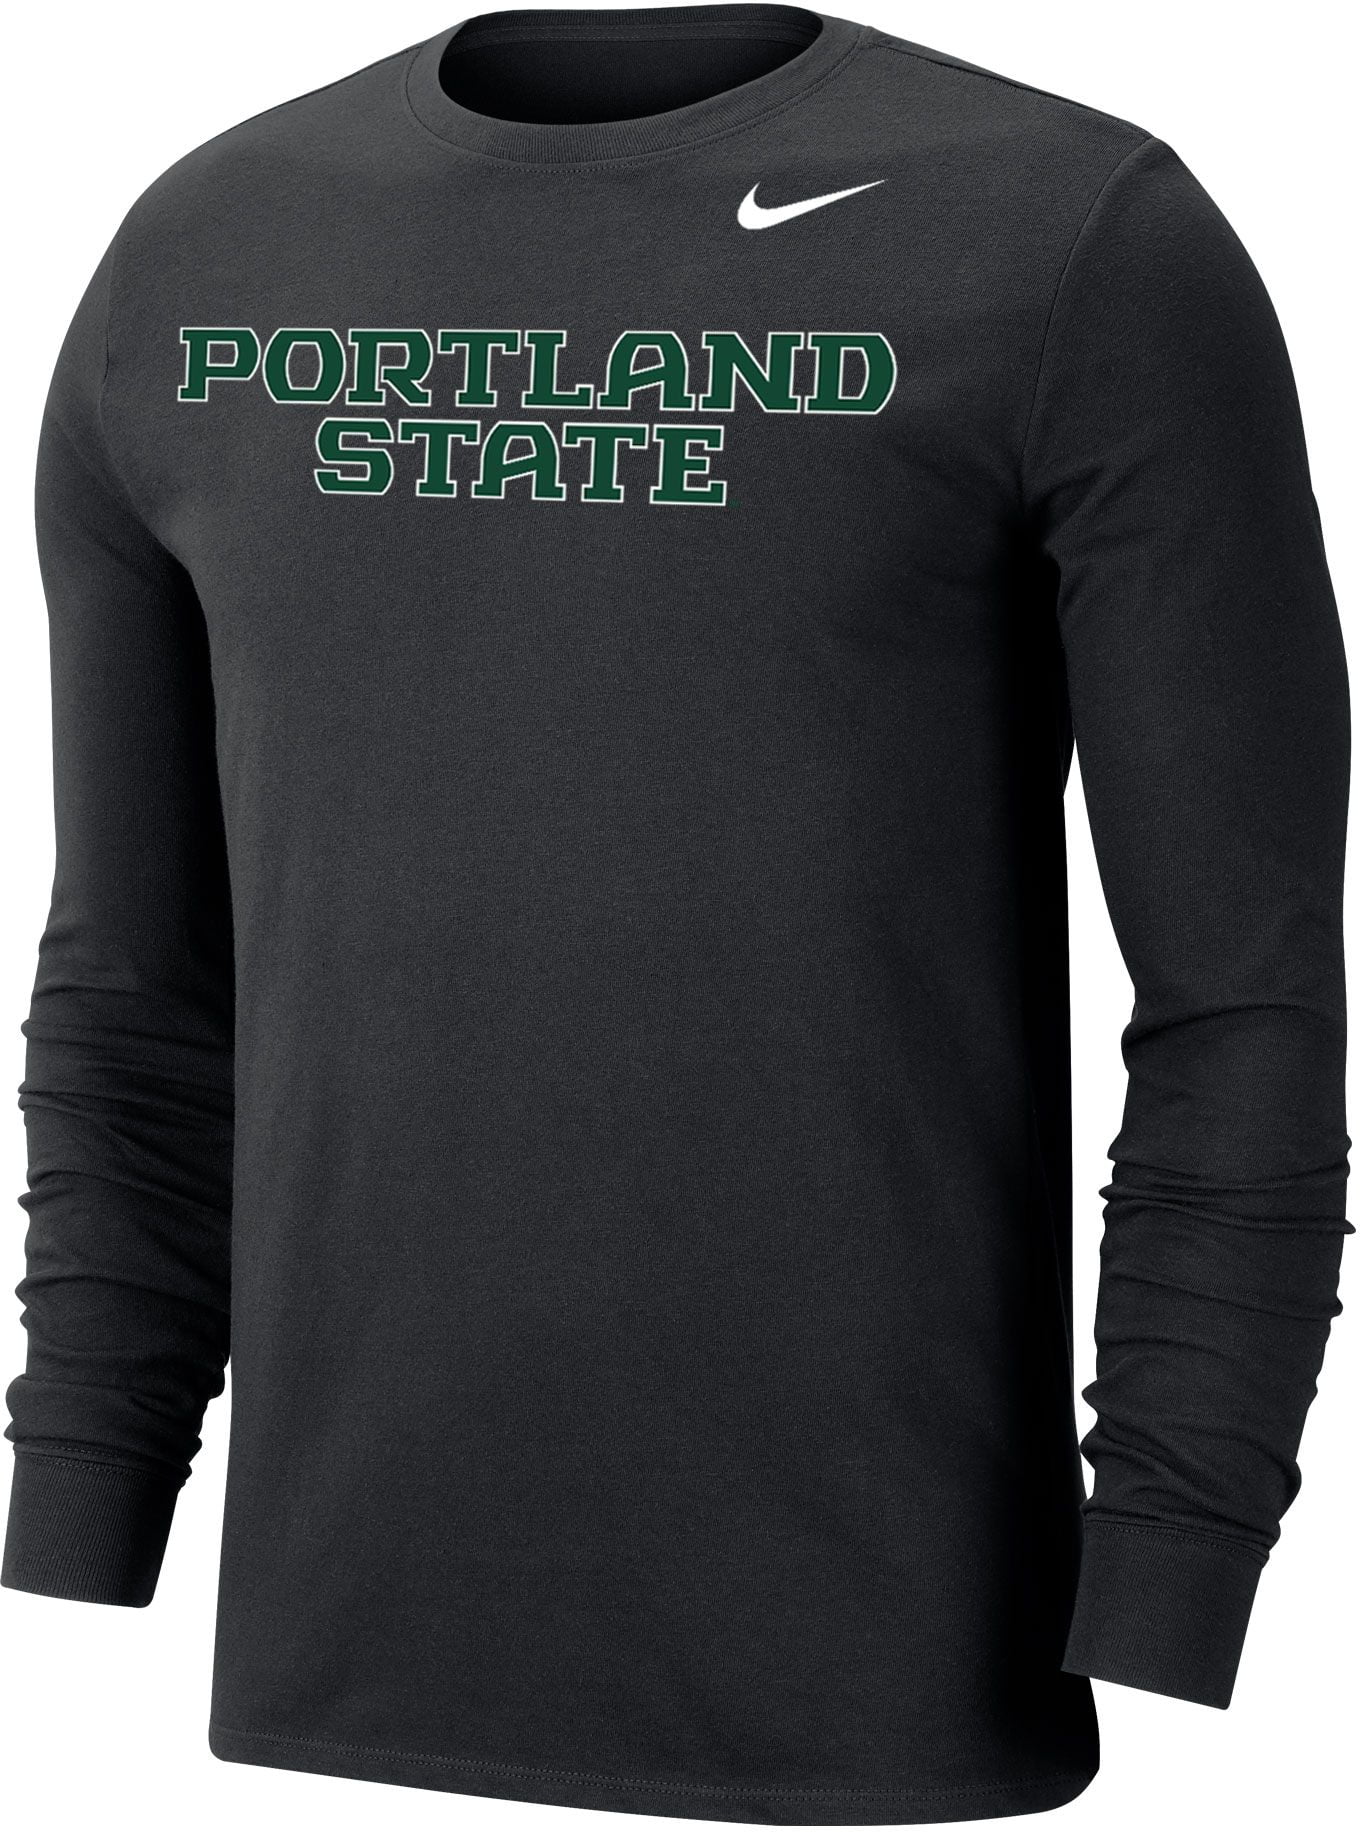 Nike - Nike Men's Portland State Vikings Wordmark Long Sleeve Black T ...